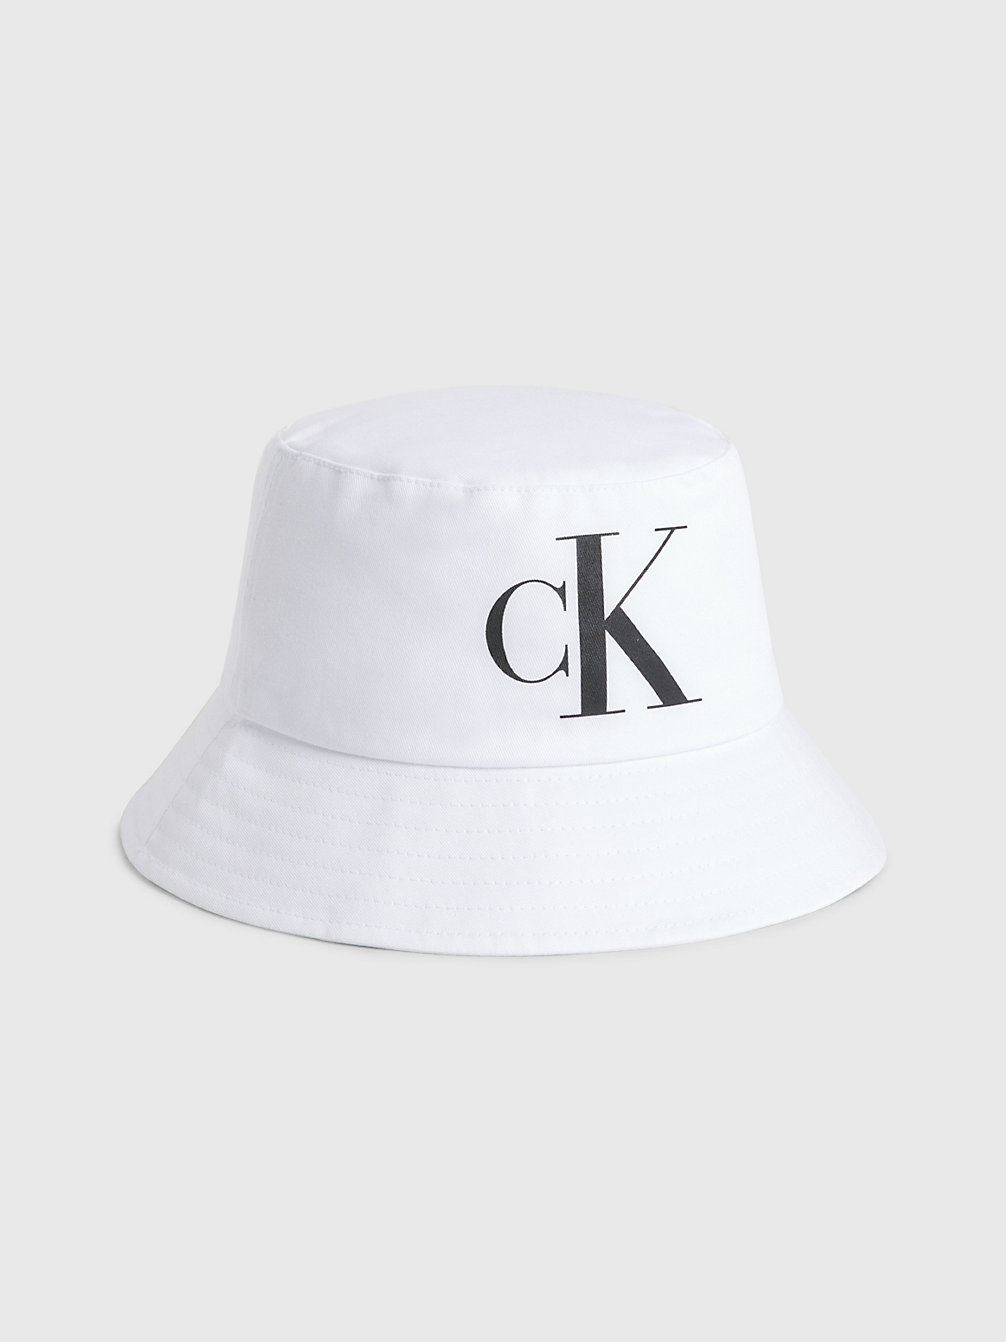 PVH CLASSIC WHITE > Dziecięcy Kapelusz Typu Bucket Hat Z Bawełny Organicznej > undefined kids unisex - Calvin Klein